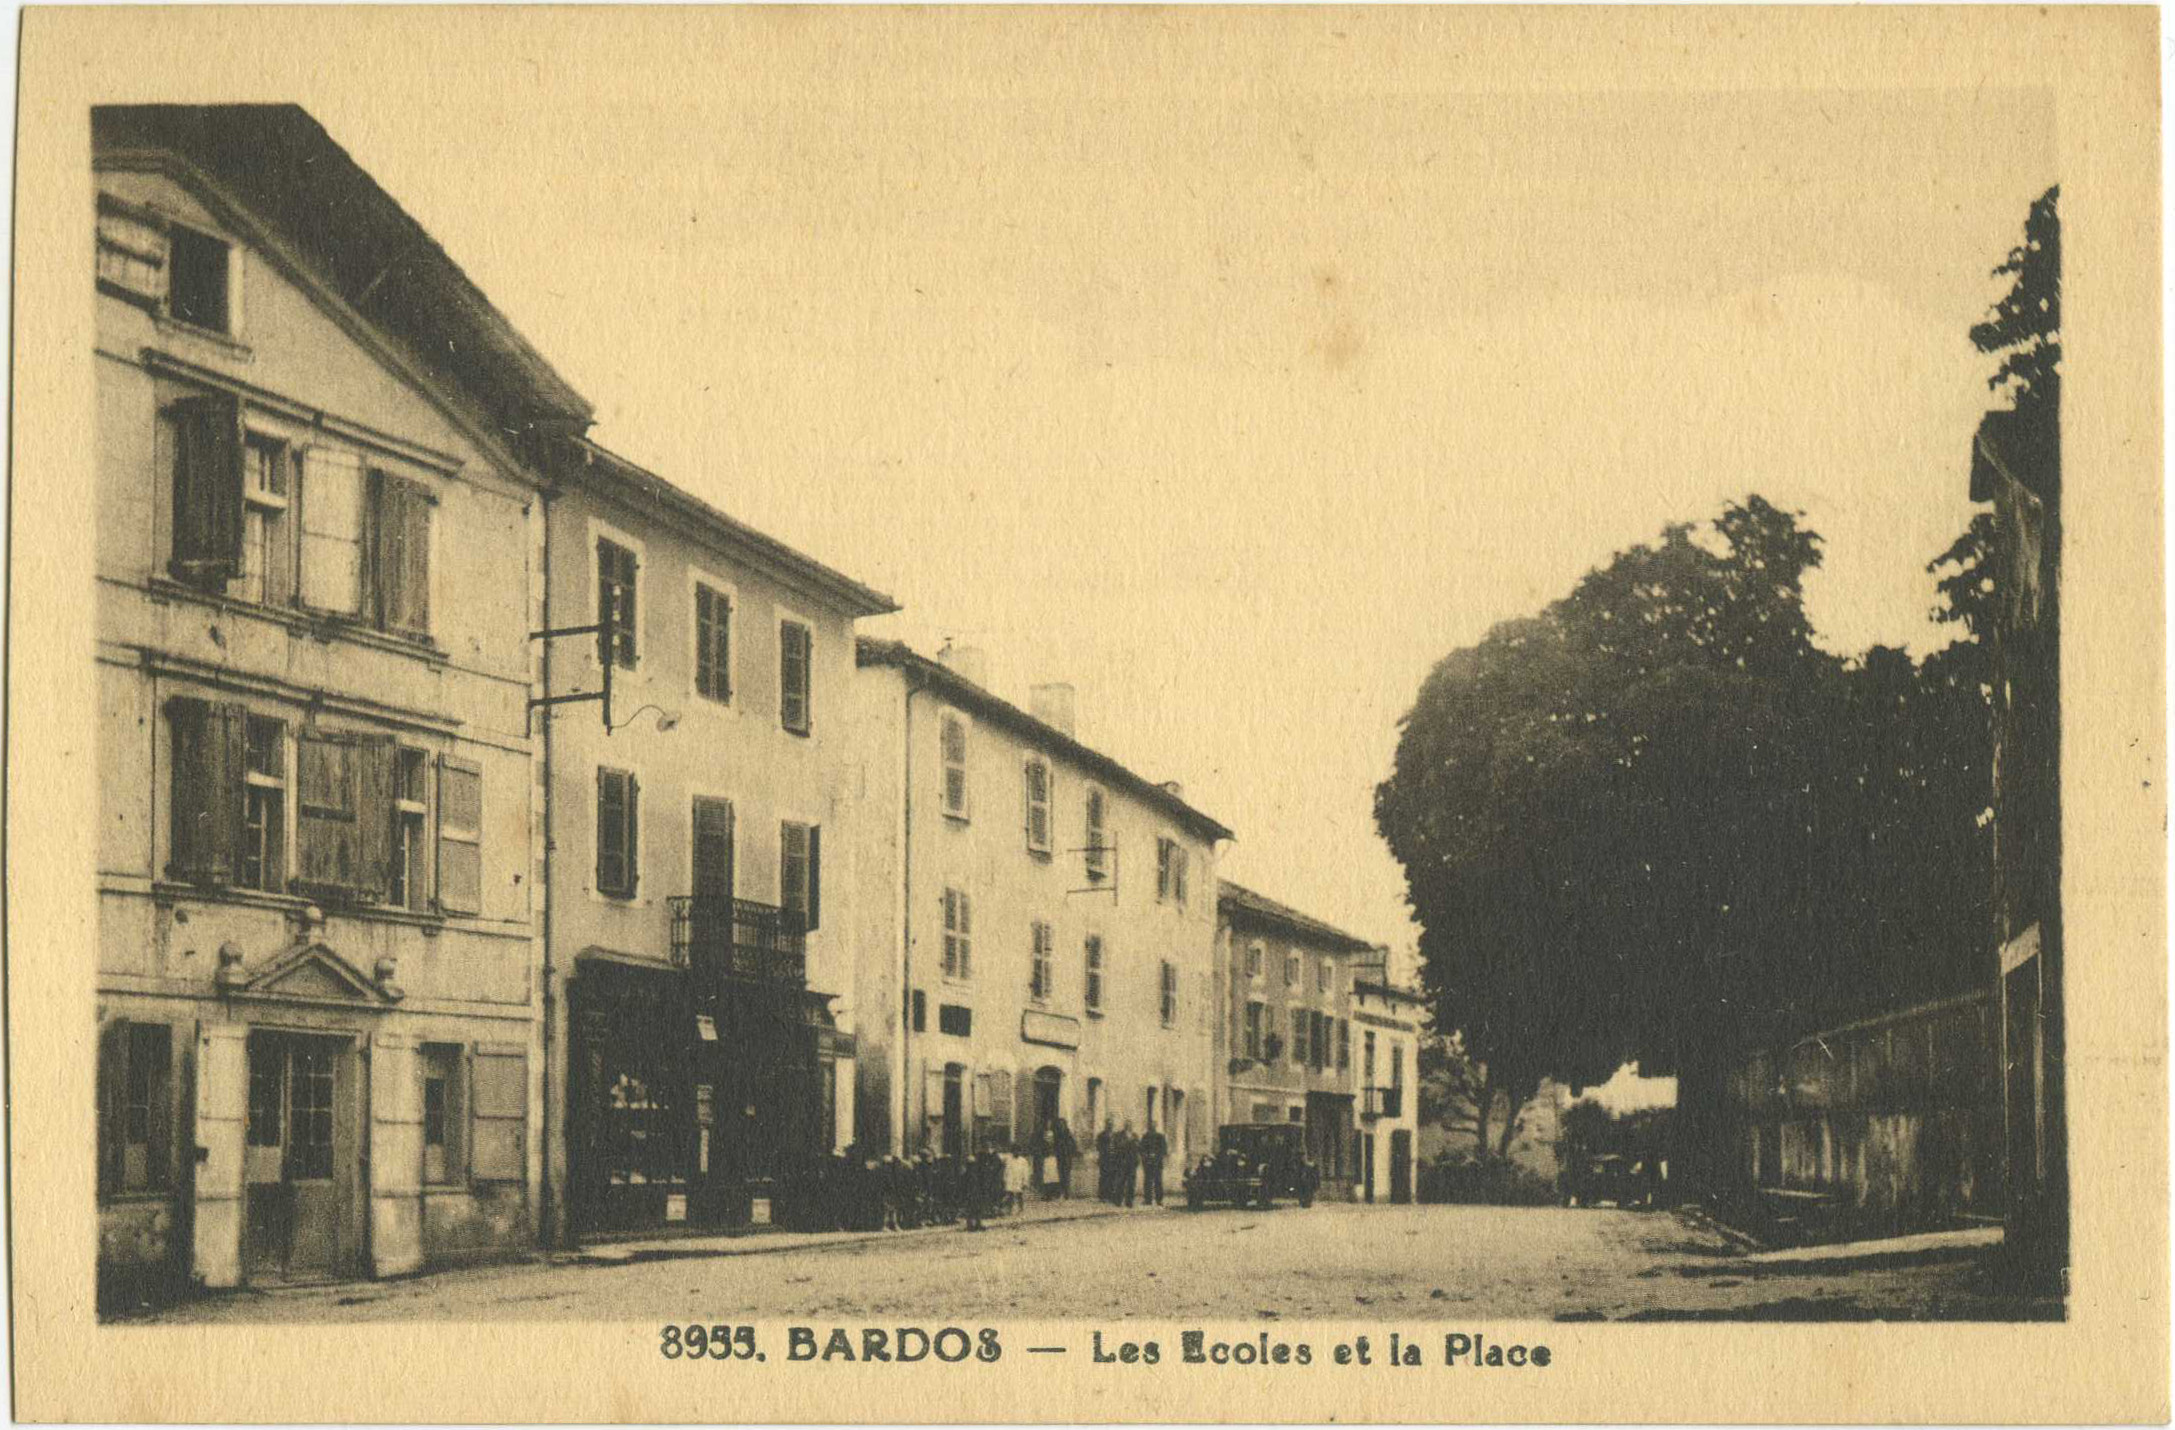 Bardos - Les Ecoles et la Place